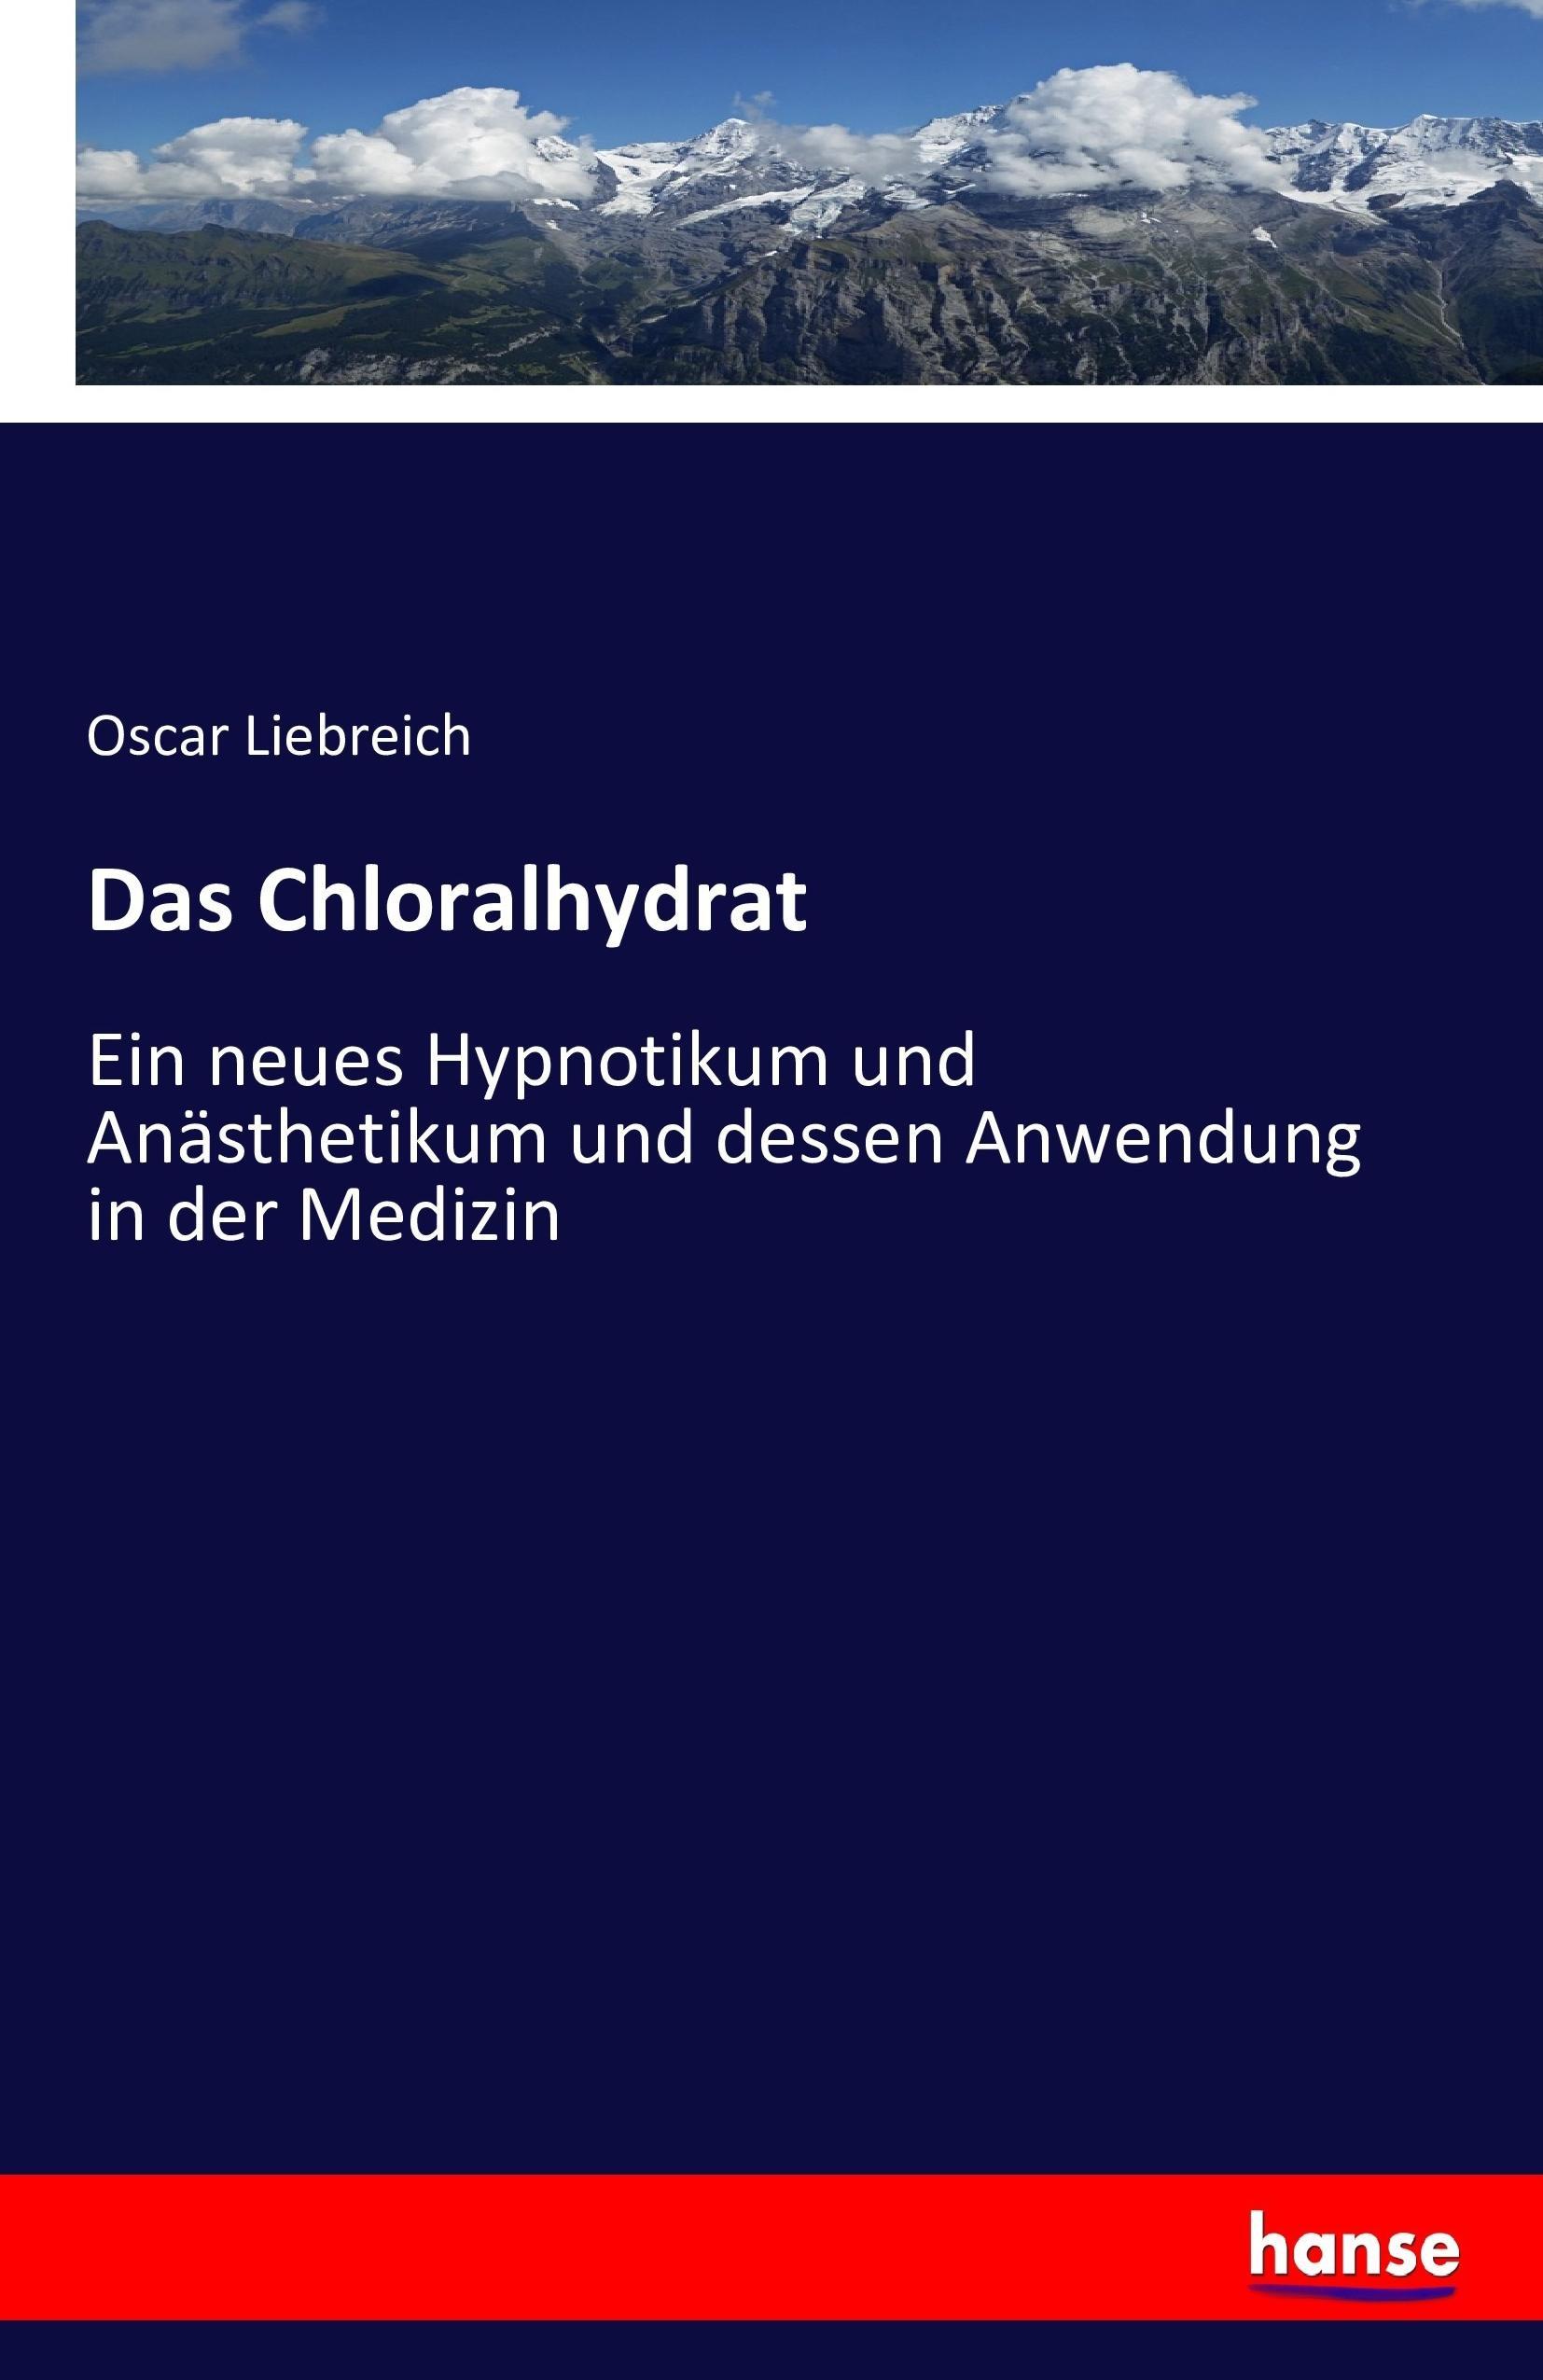 Das Chloralhydrat - Liebreich, Oscar